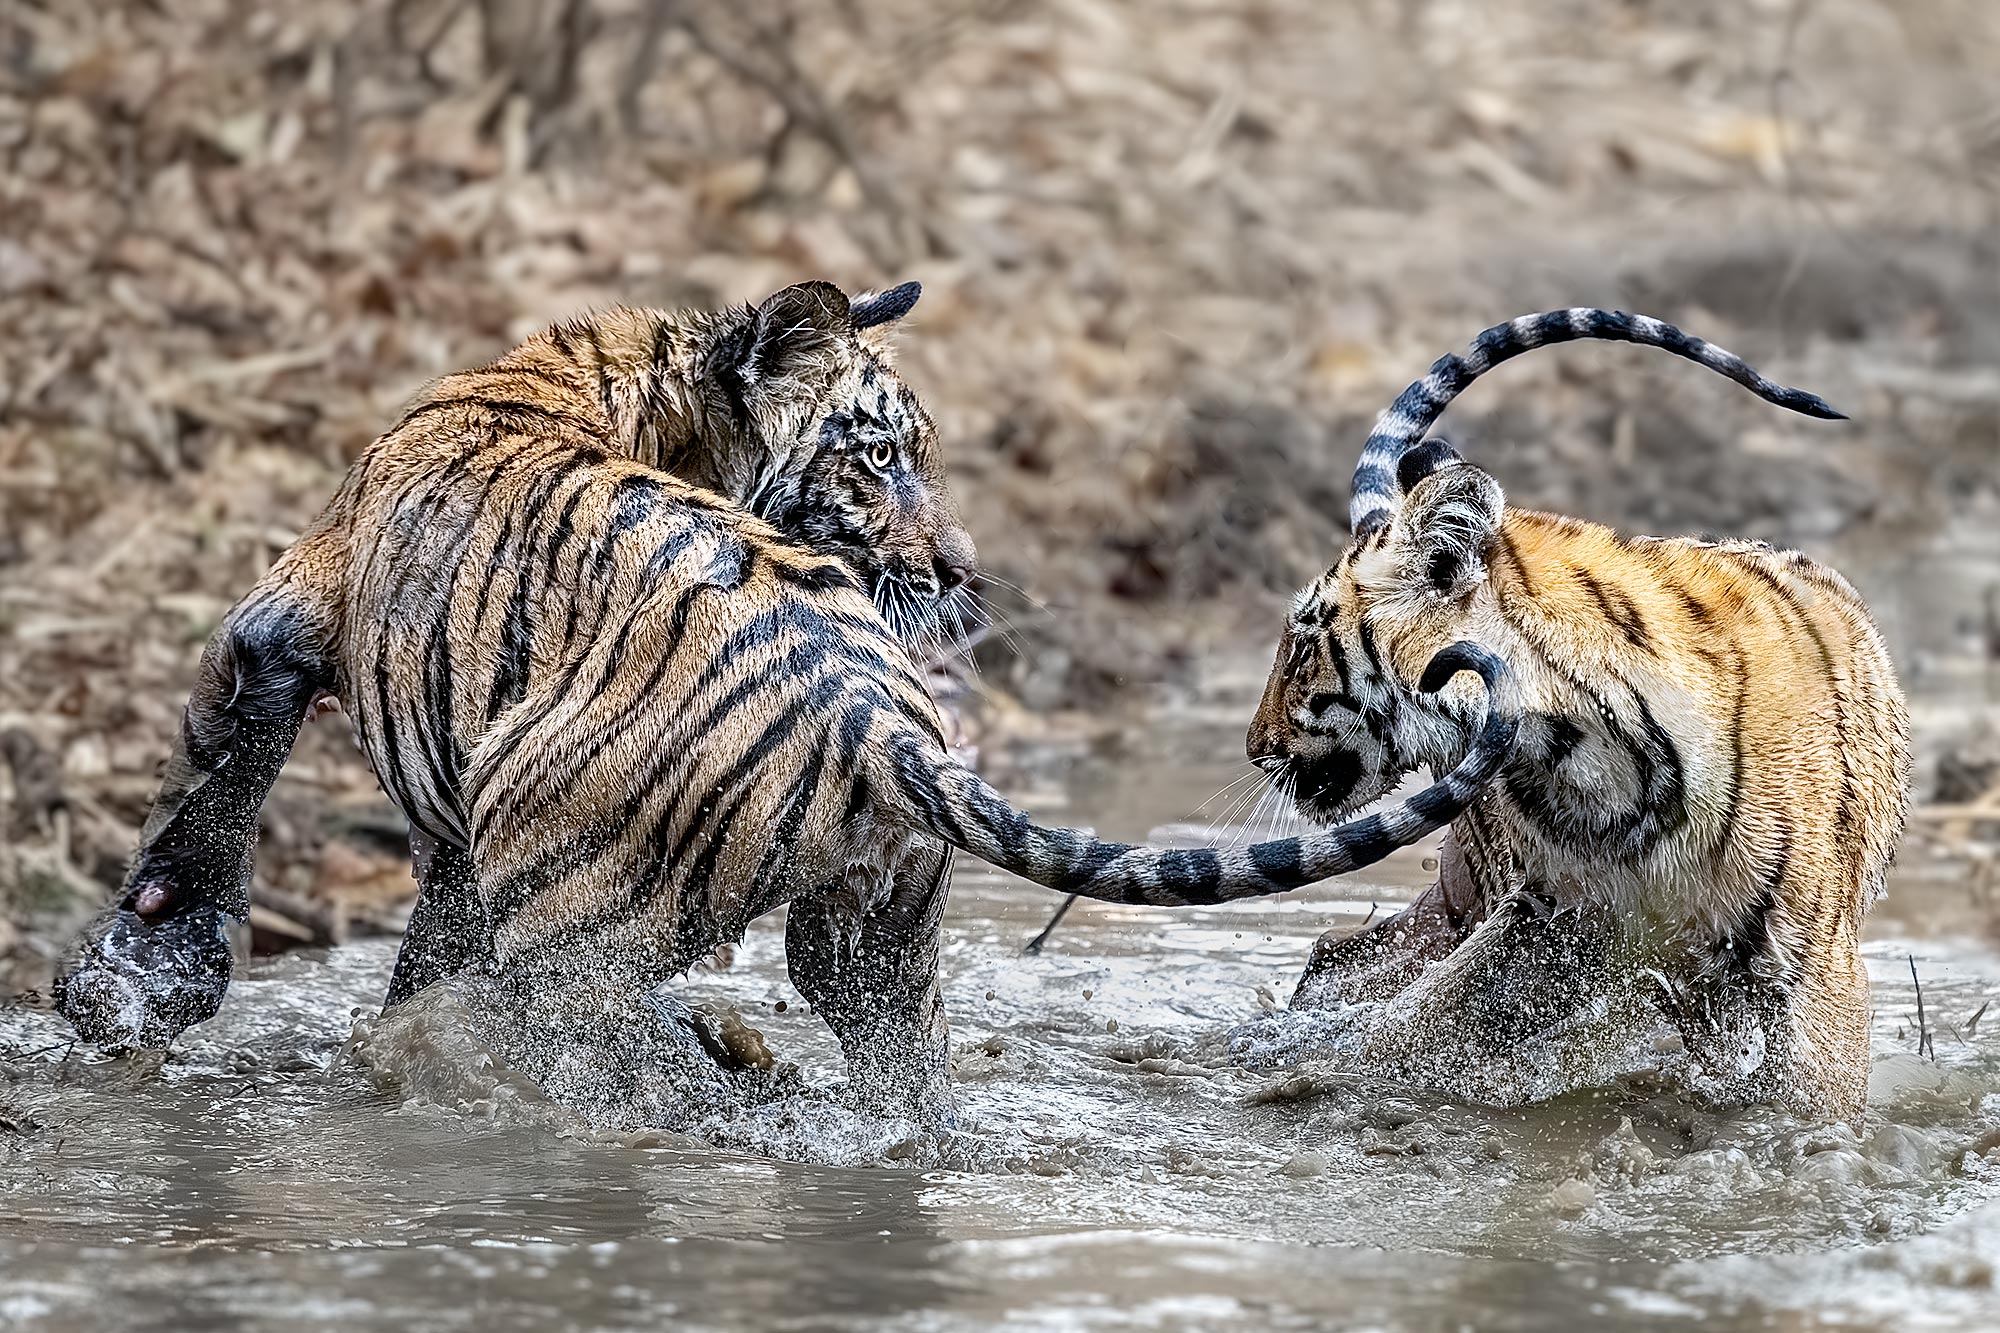 Tiger Babys spielen im Wasser auf einer Tiger Safari in Indien. Fotografiert auf einer Fotoreise von Benny Rebel.